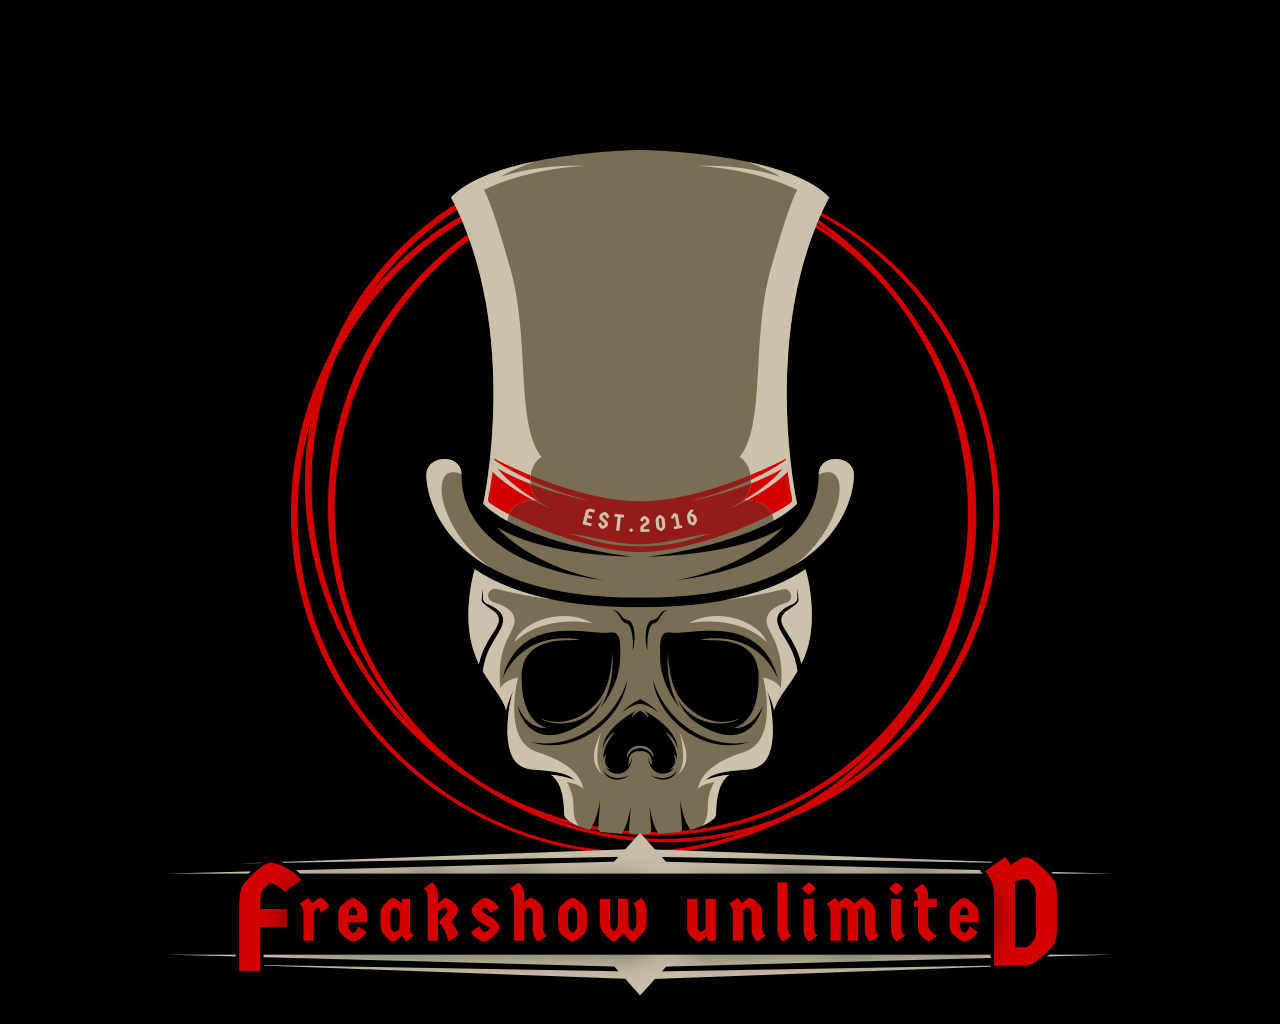 www.freakshowunlimited.com